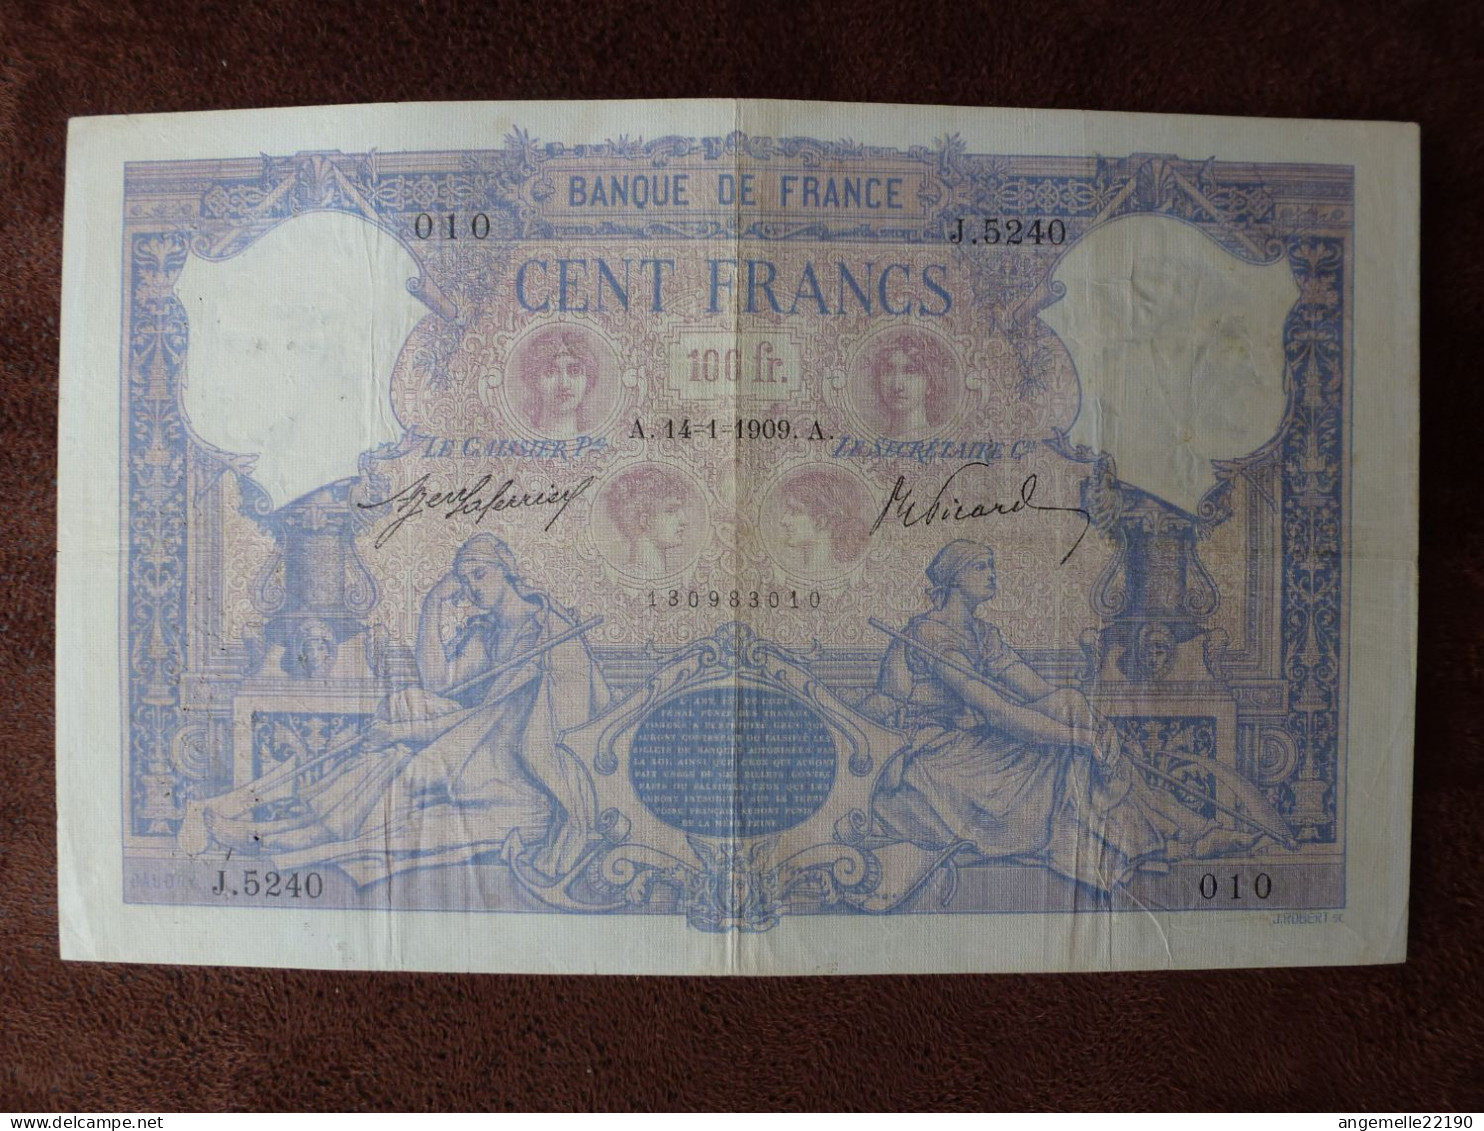 1 Billets De  100 FR  BLEU  DE 1909 / FAY 21/22  LETTRE A   TTB - ...-1889 Anciens Francs Circulés Au XIXème